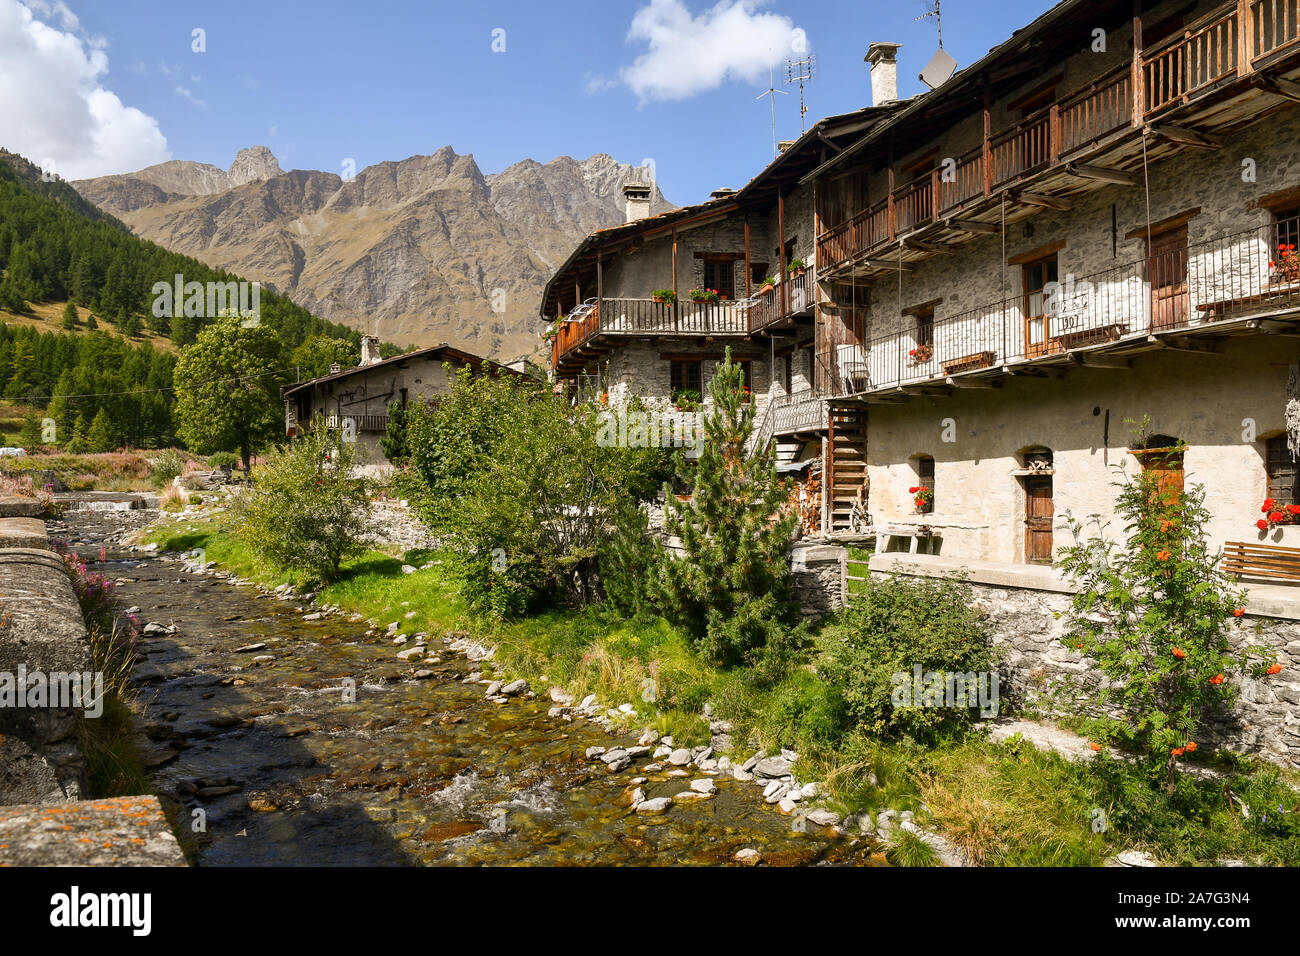 Malerischer Blick auf die Alpine Dorf Chianale, eines der schönsten Dörfer Italiens, mit der varaita Fluss im Sommer, Cuneo, Piemont, Italien Stockfoto